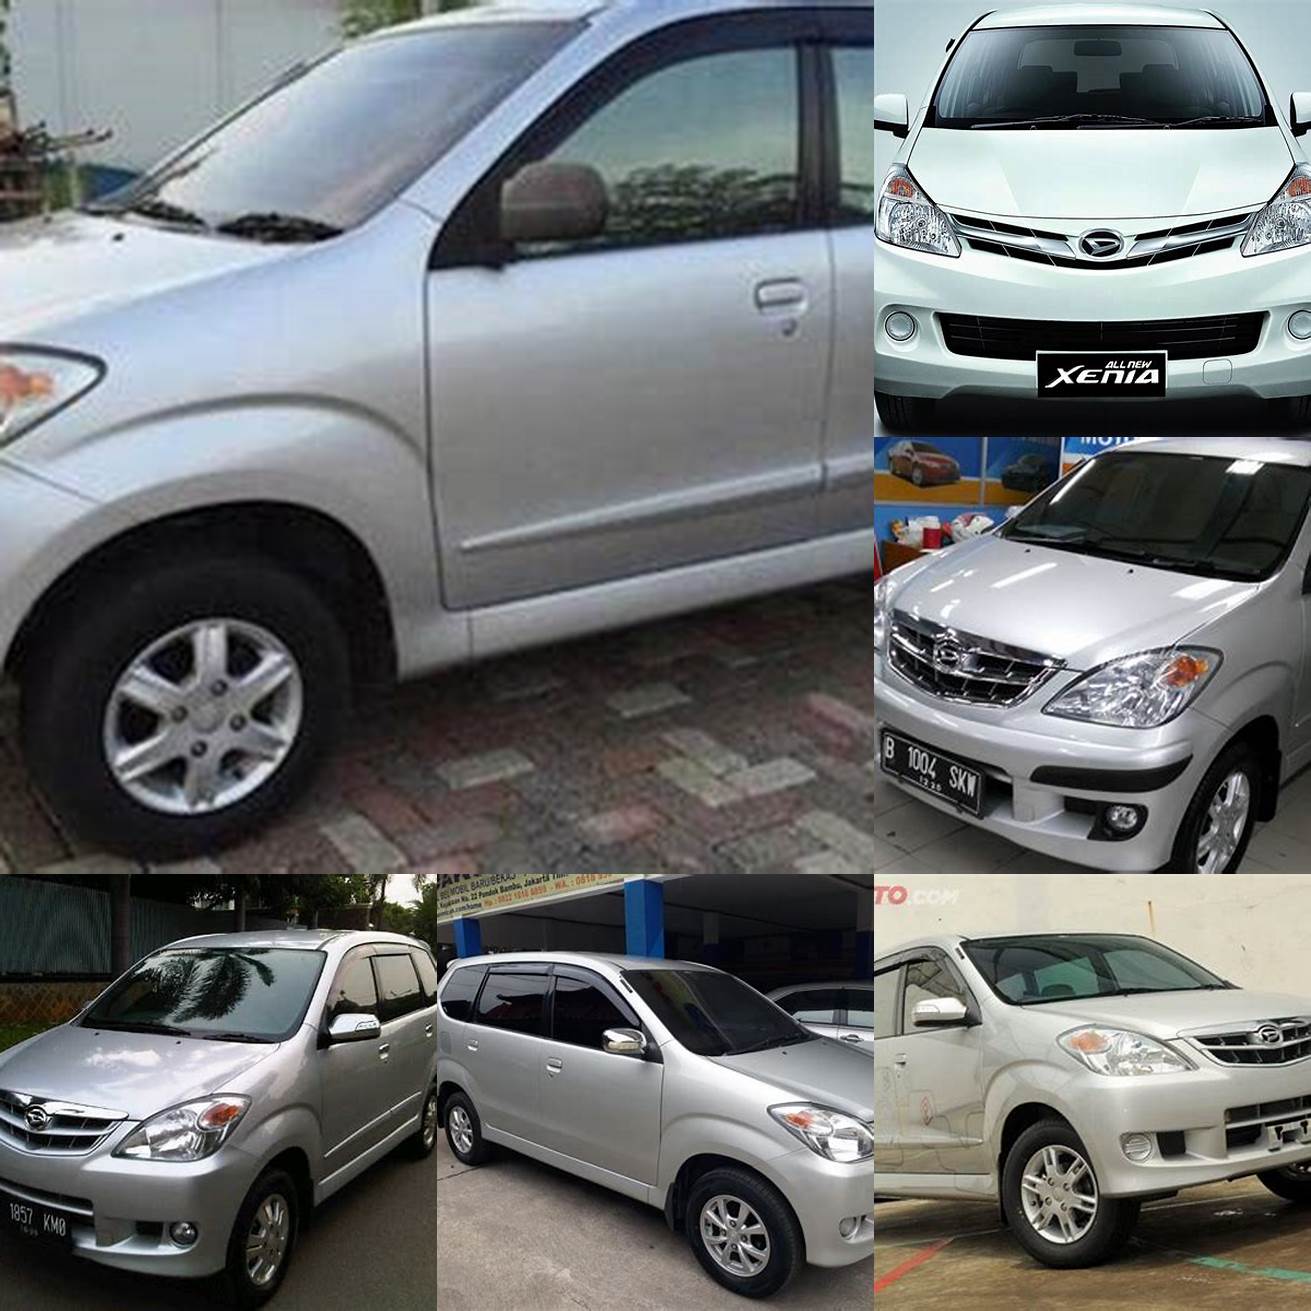 Harga mobil bekas Xenia tahun 2009-2010 berkisar antara 60-70 jutaan